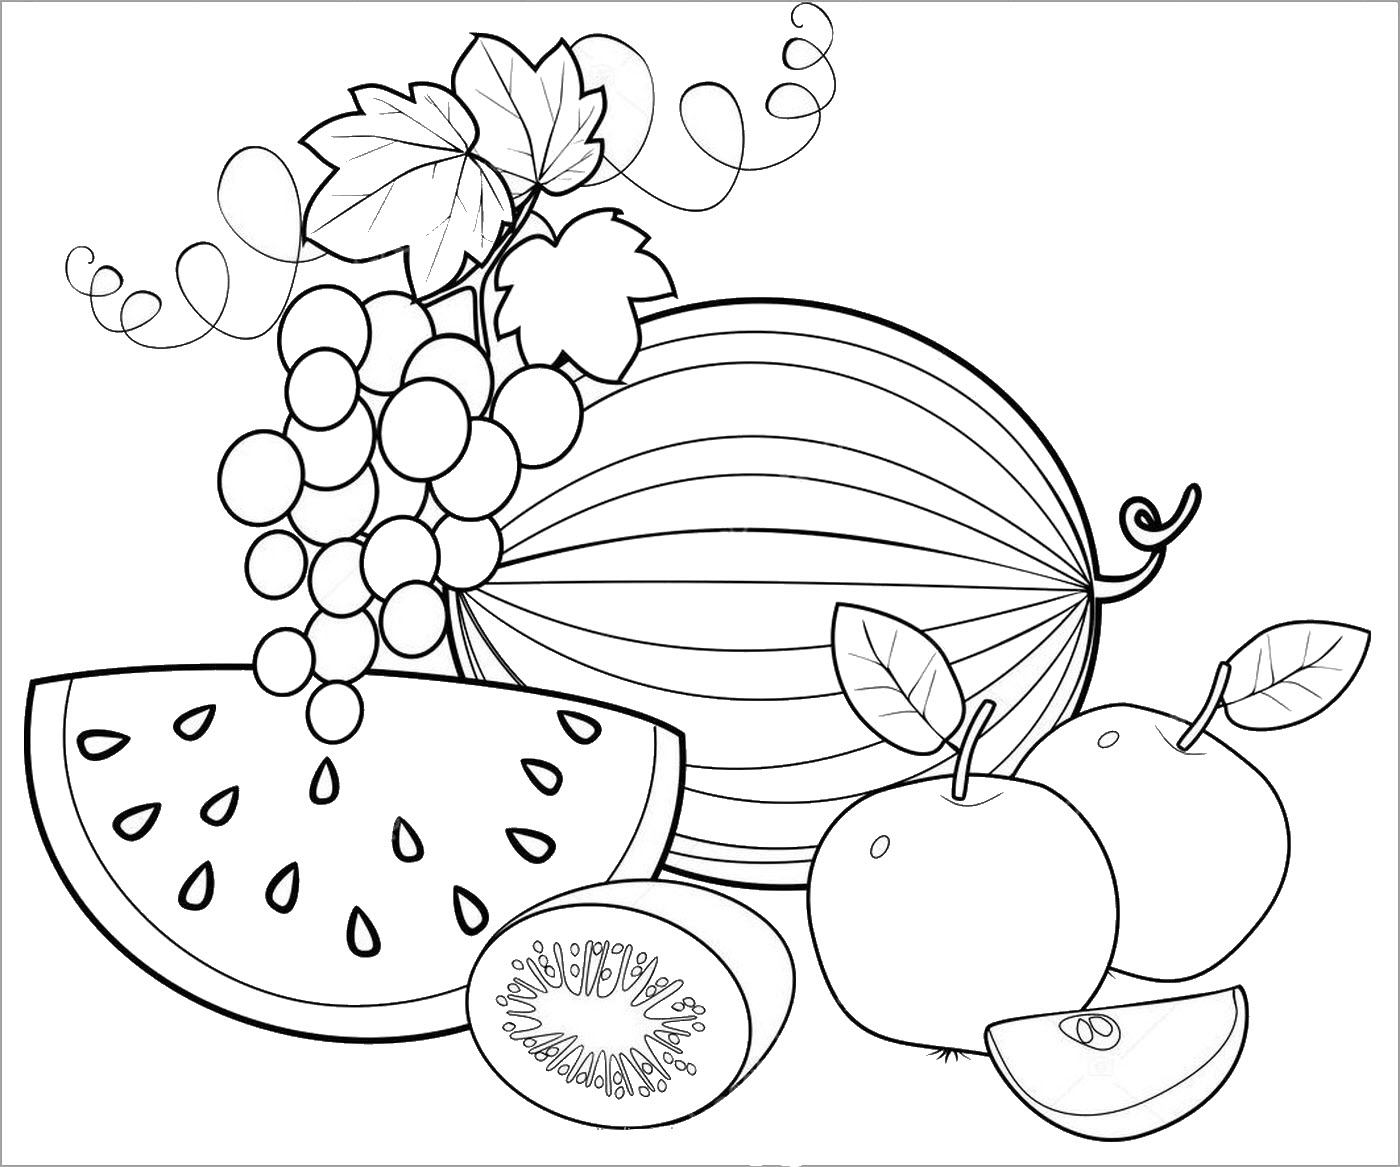 Tranh tô màu hoa quả với nhiều loại trái cây